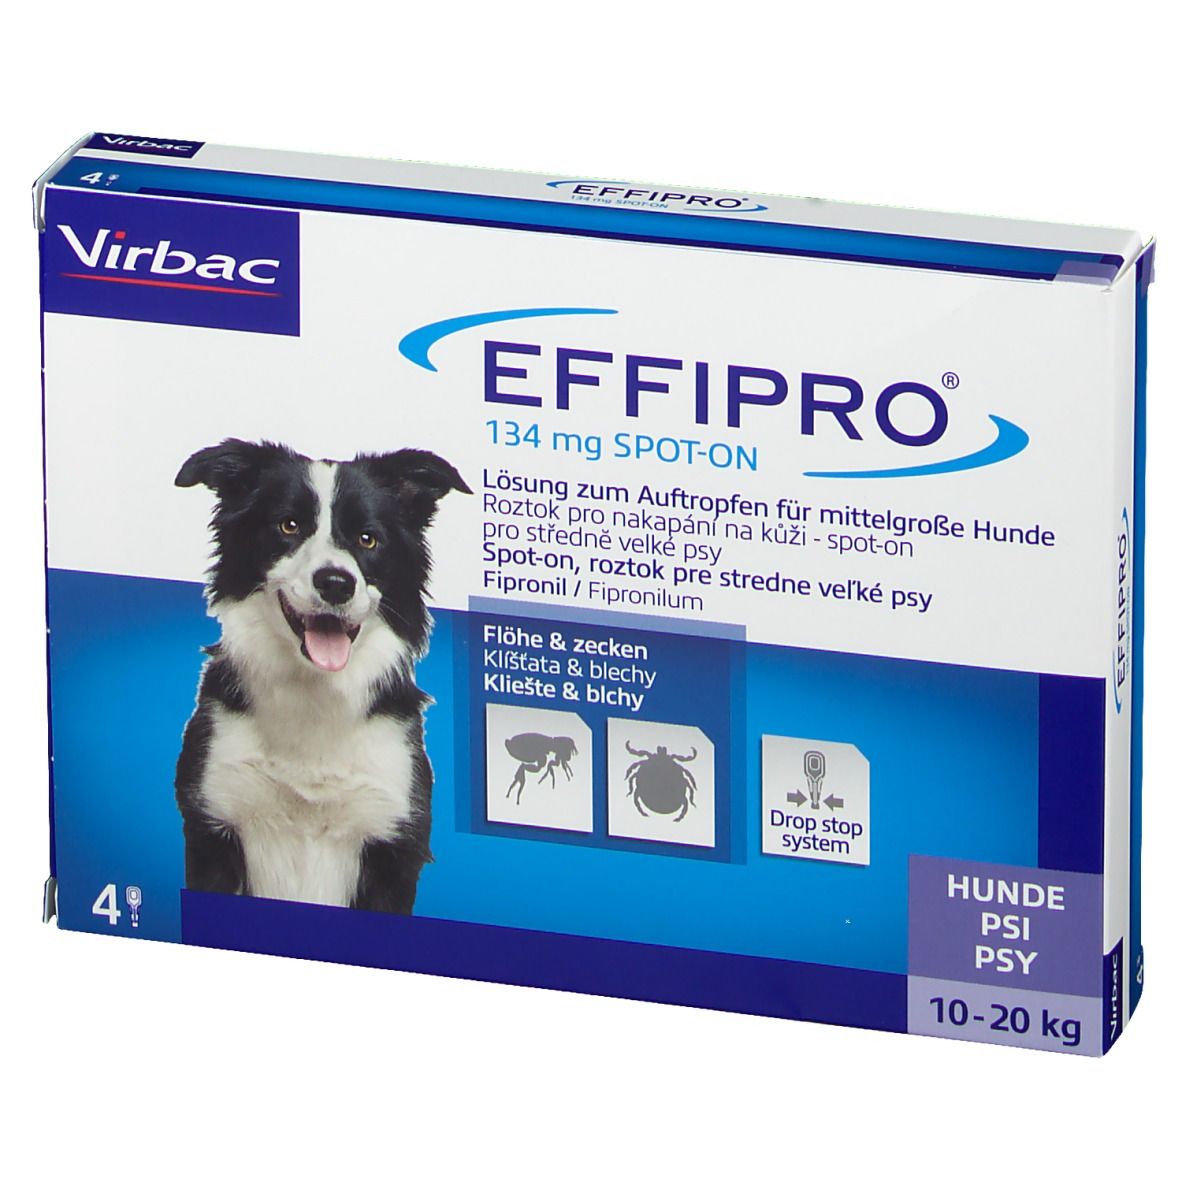 EFFIPRO® 134 mg Lösung zum Auftropfen für mittelgroße Hunde 10-20 kg